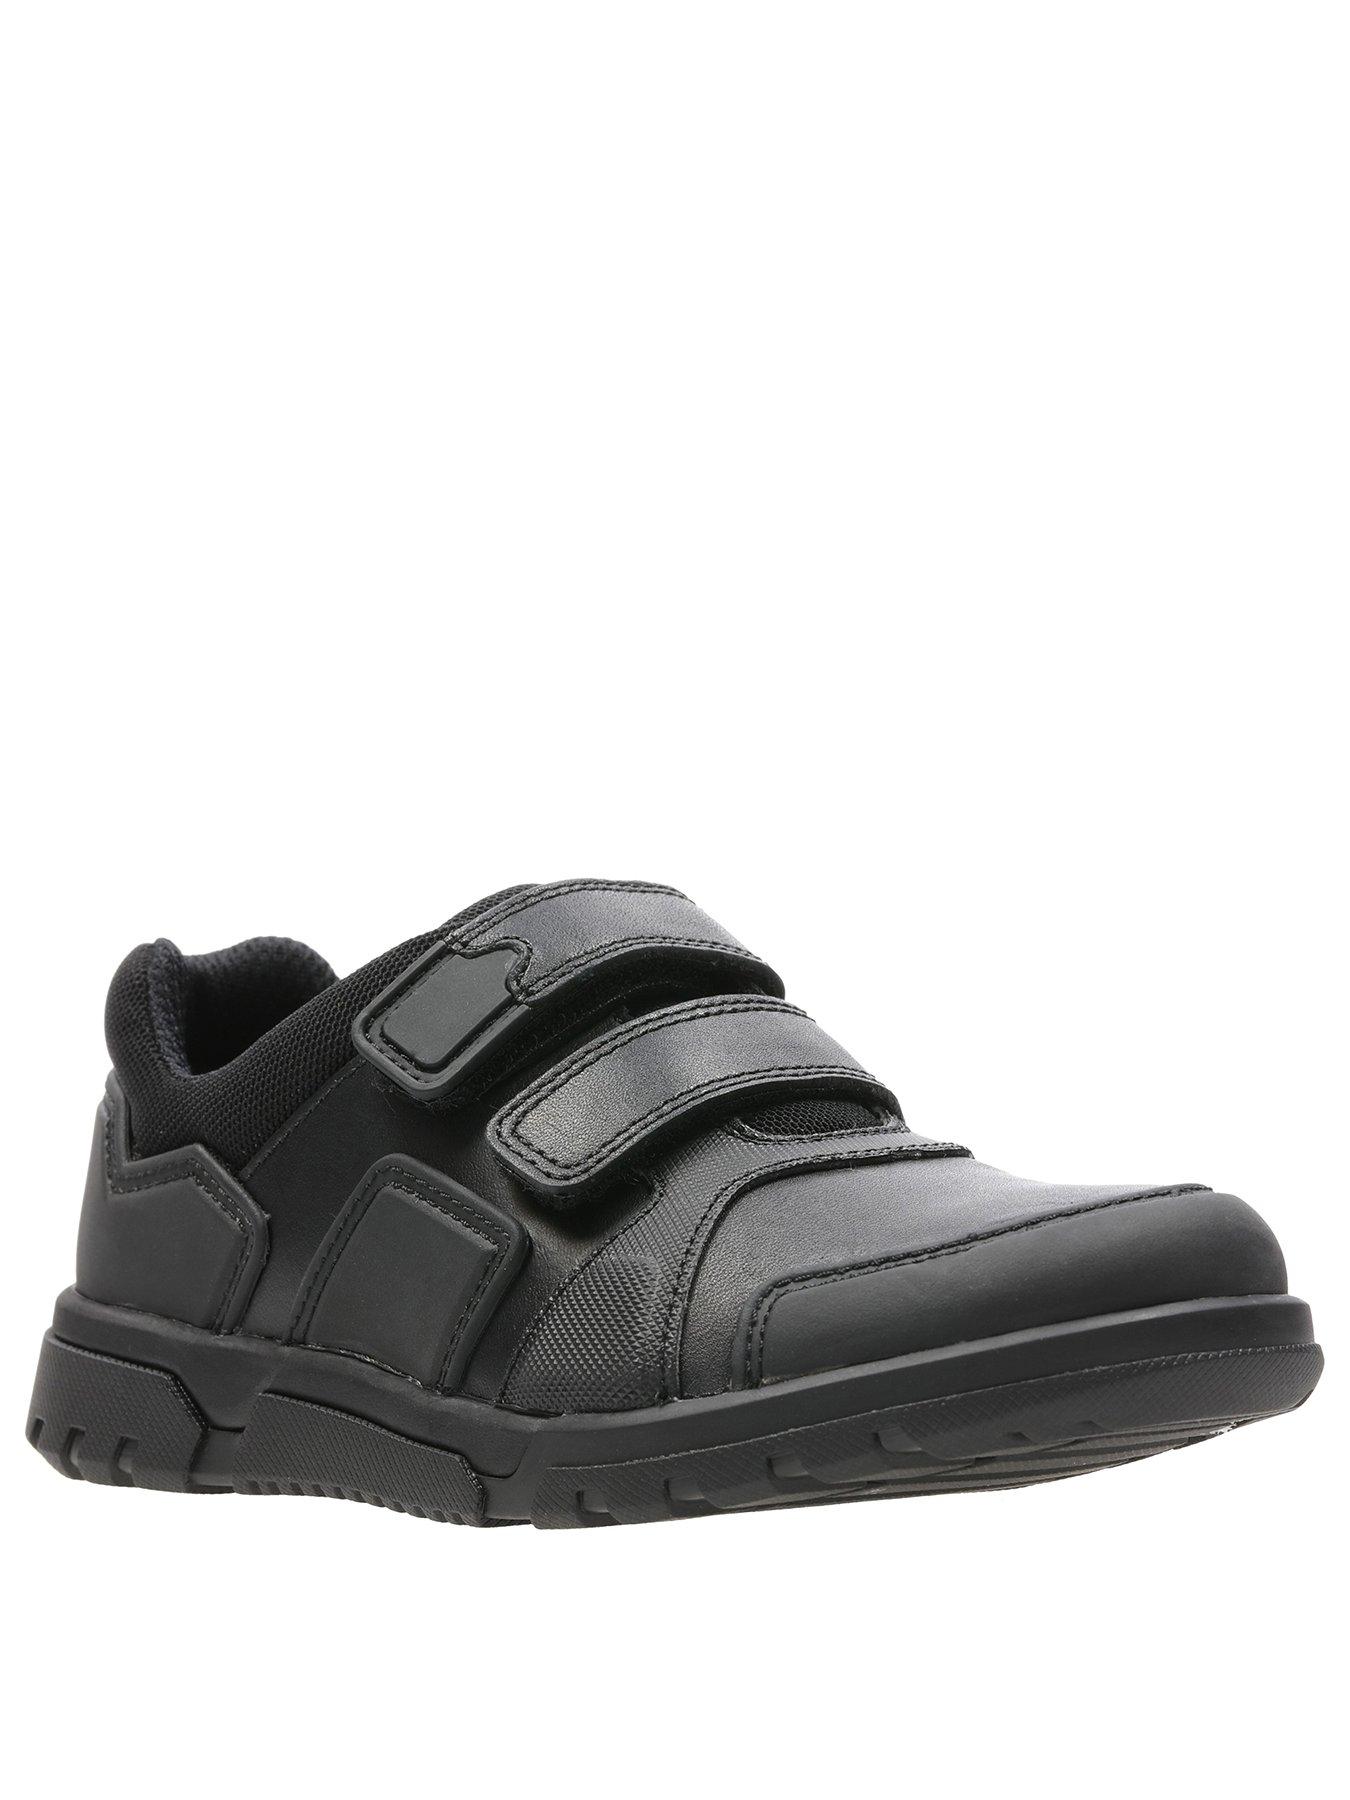 clarks black toddler shoes